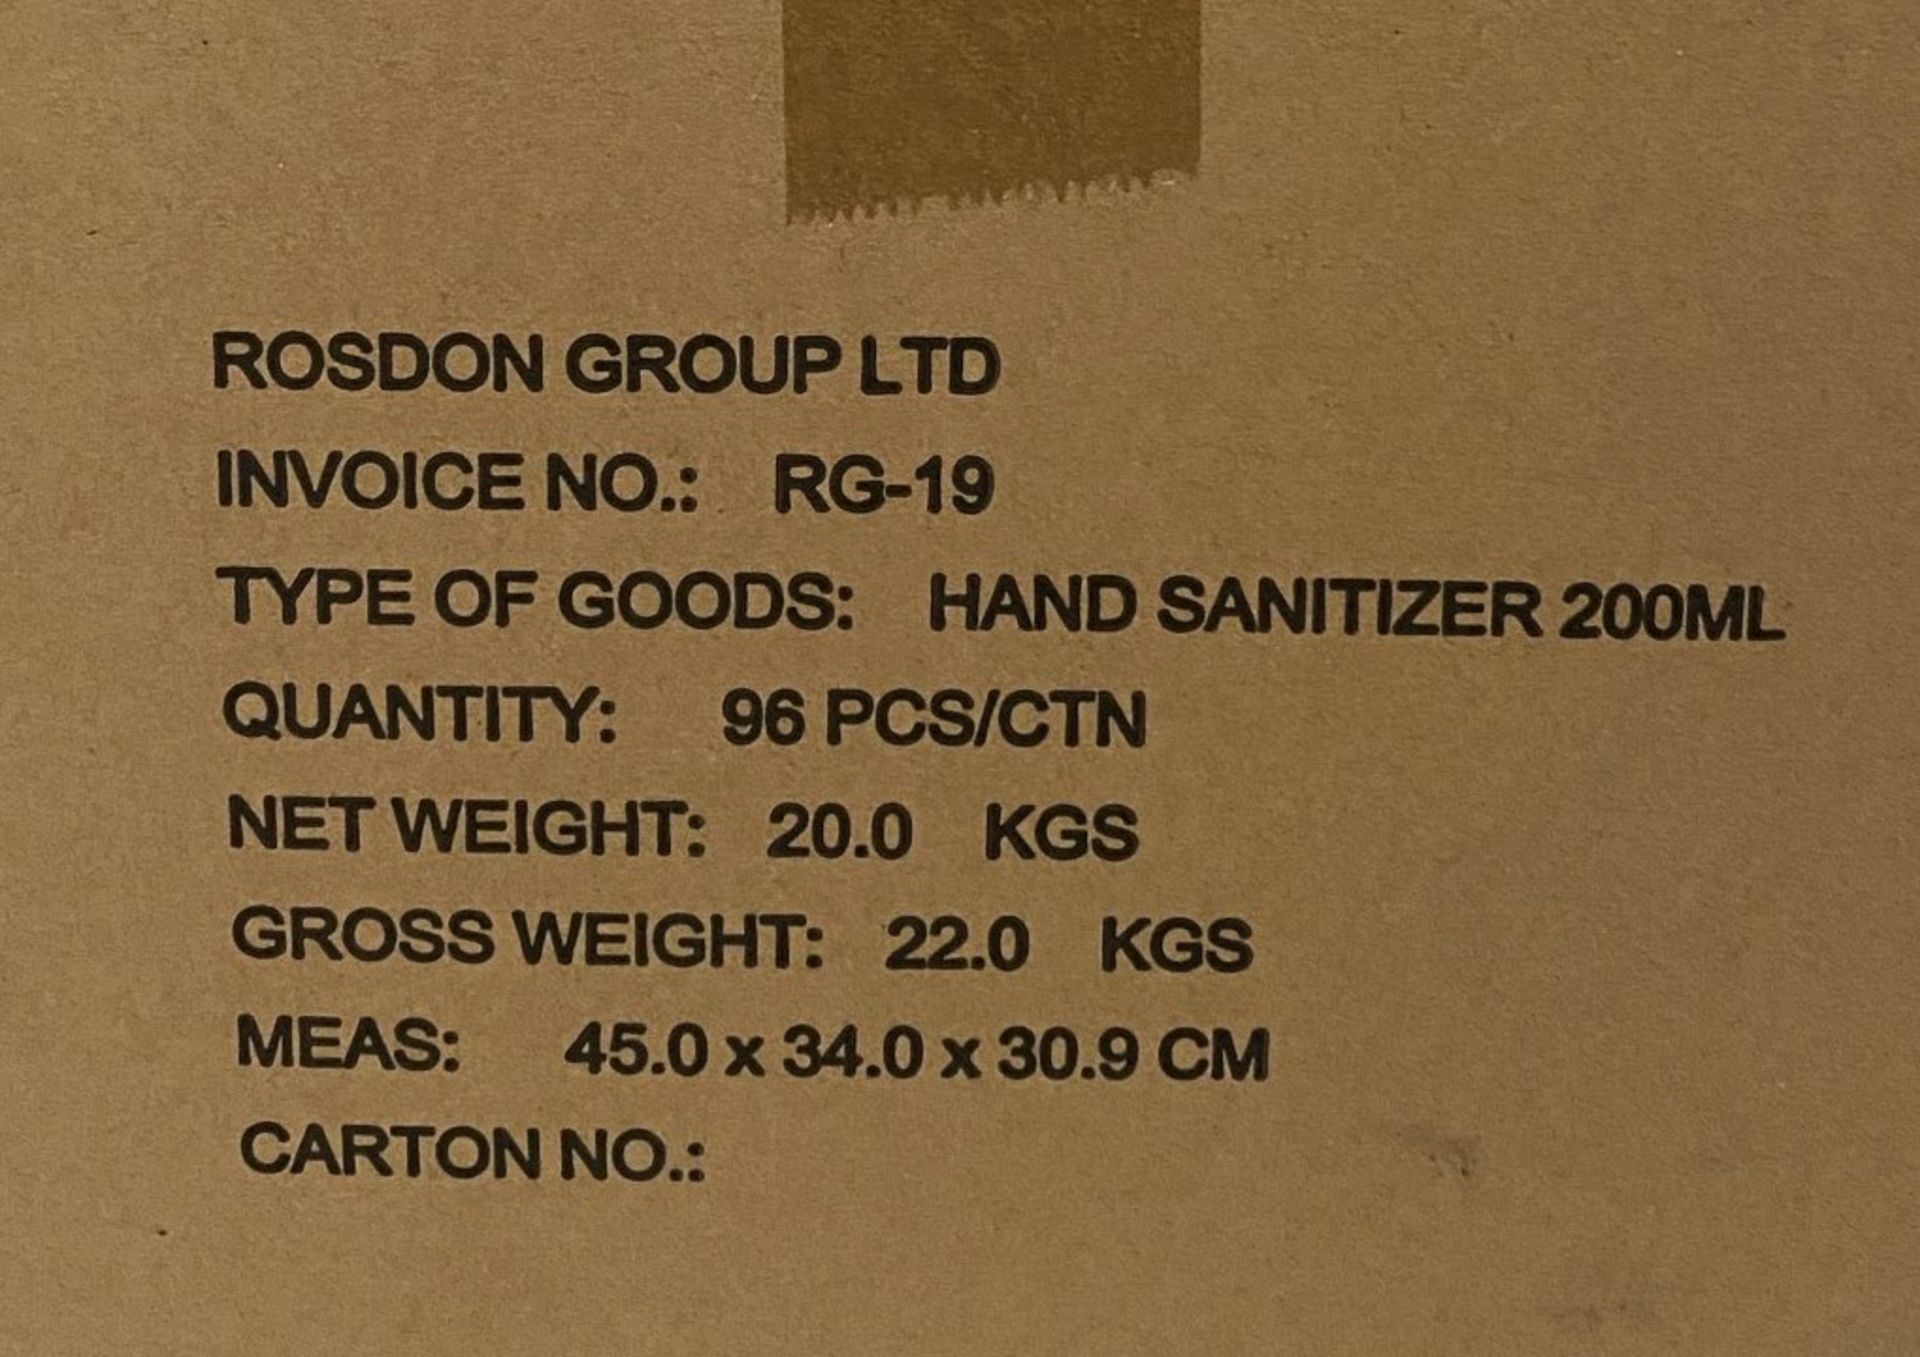 96 x 200ml pump top bottles of Rosdon Group UK hand sanitiser (Unlabelled clear plastic bottles) - - Image 4 of 4